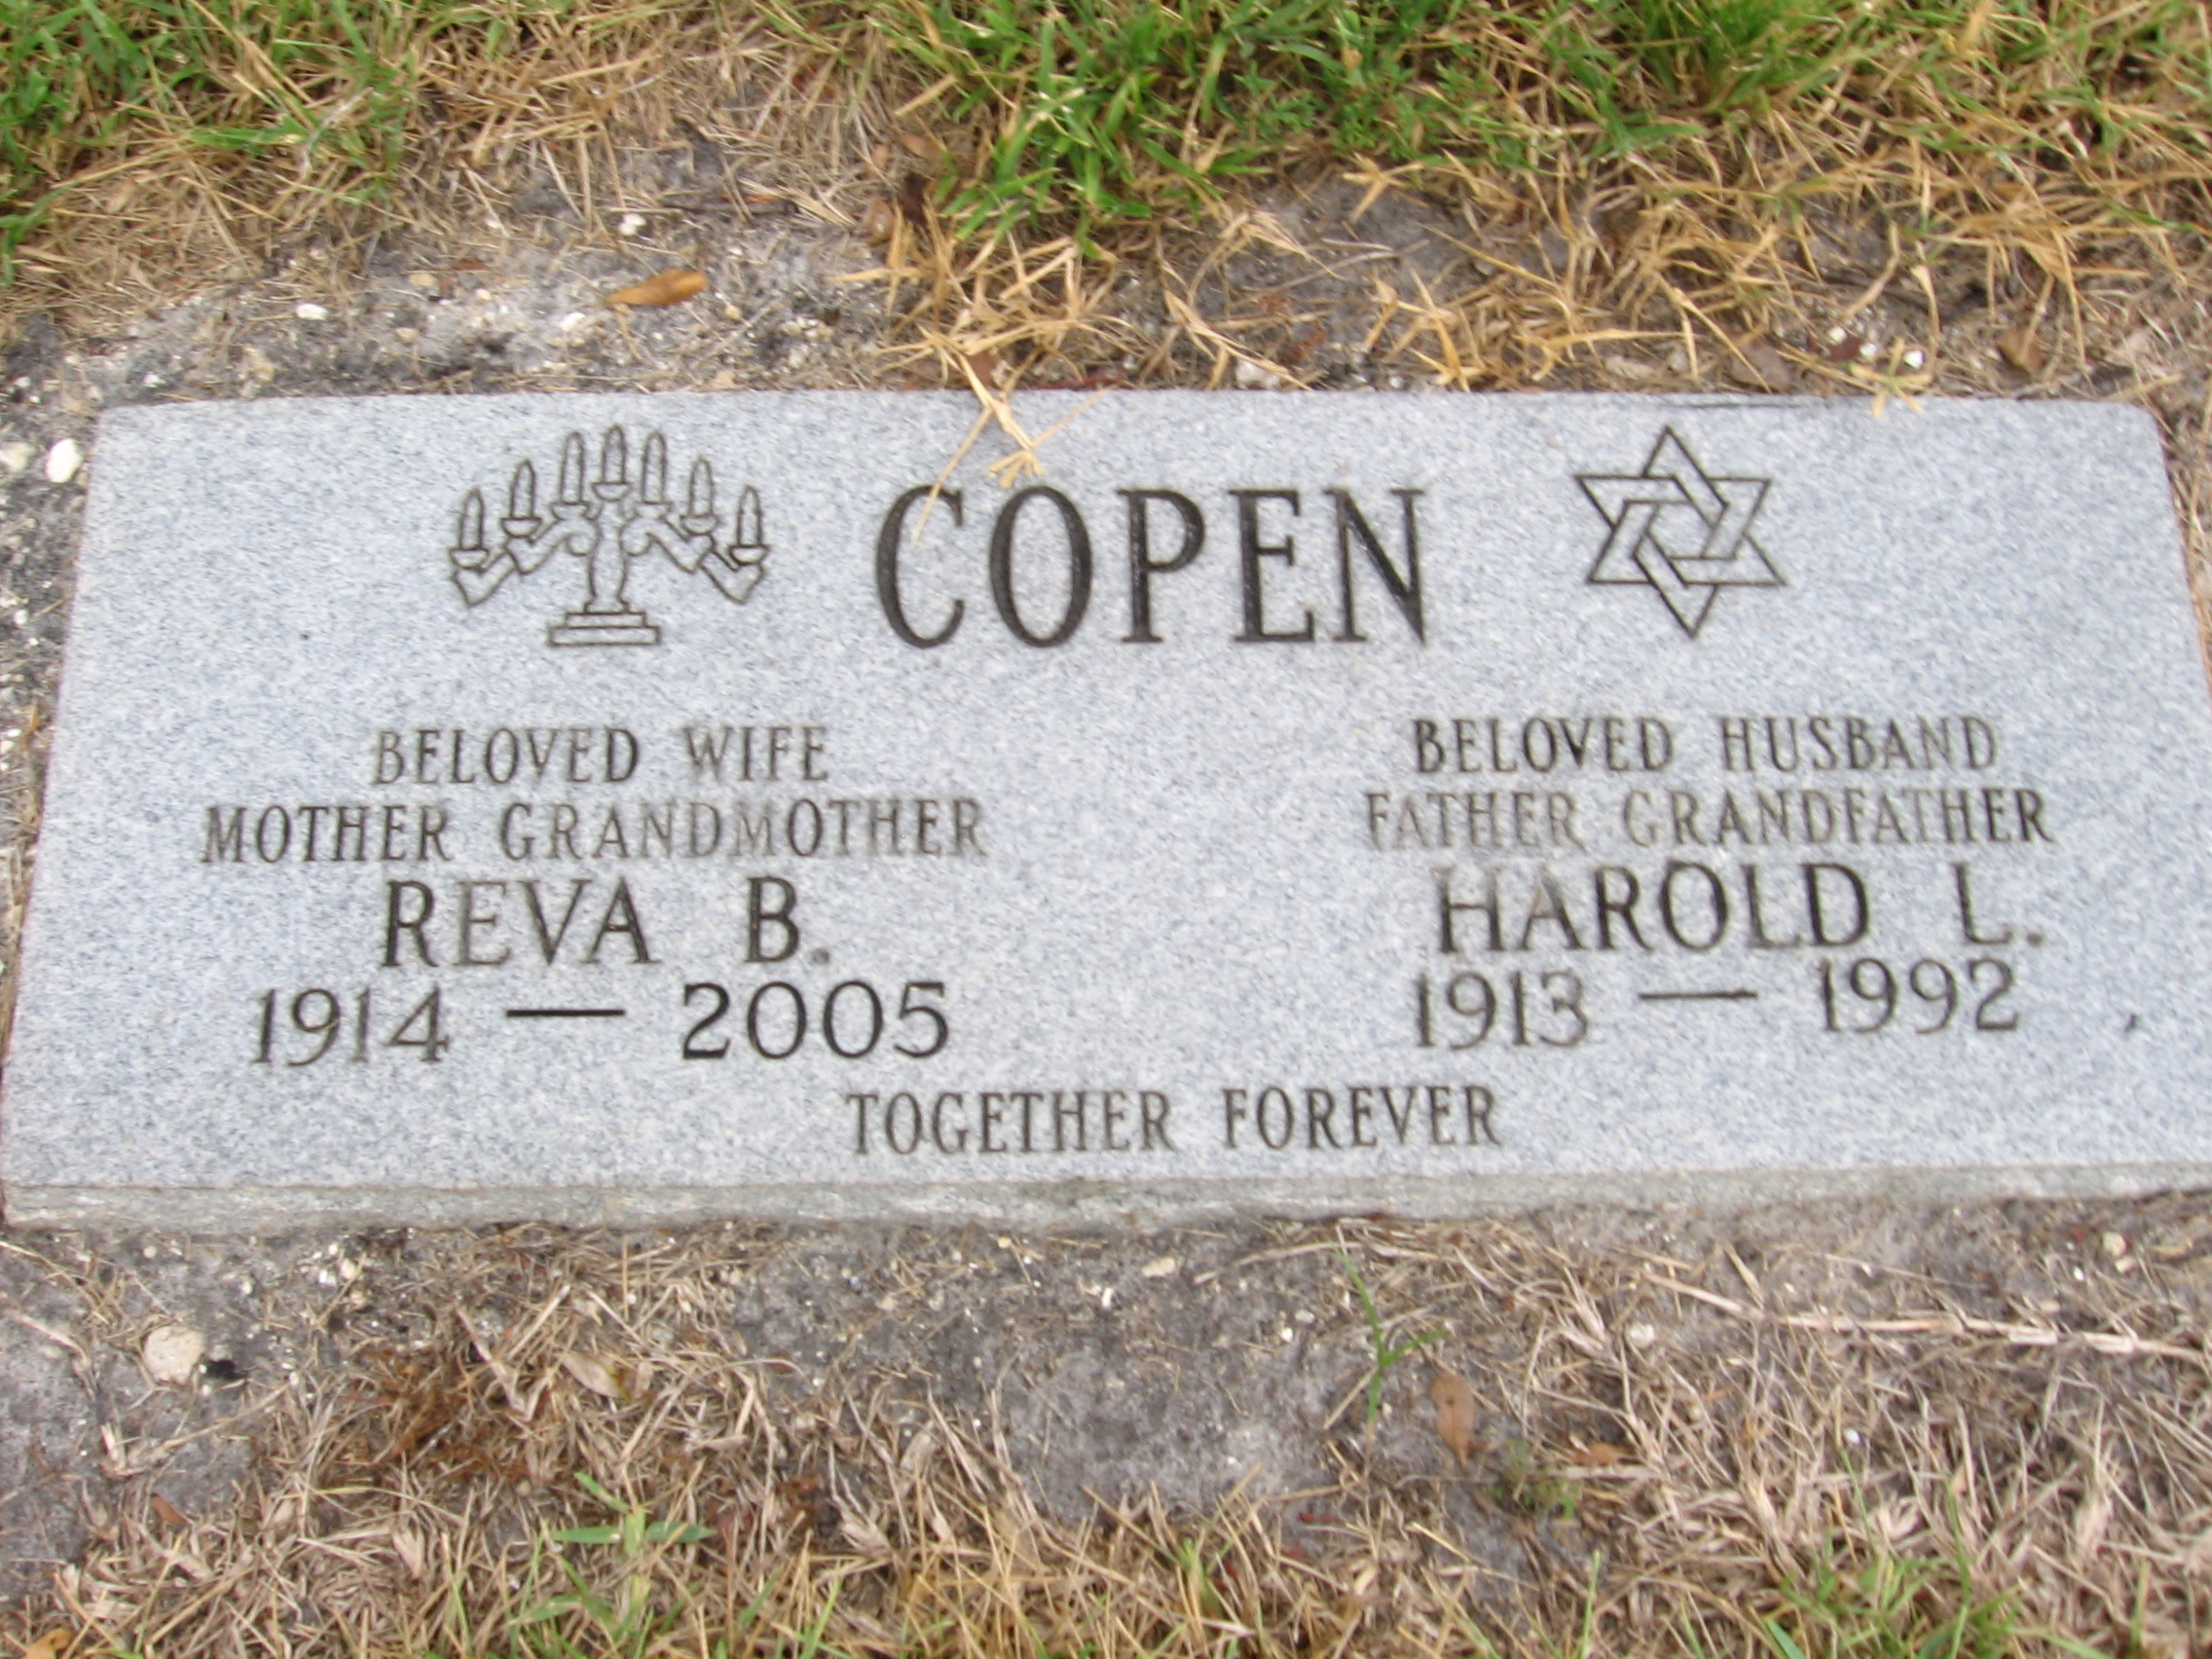 Harold L Copen